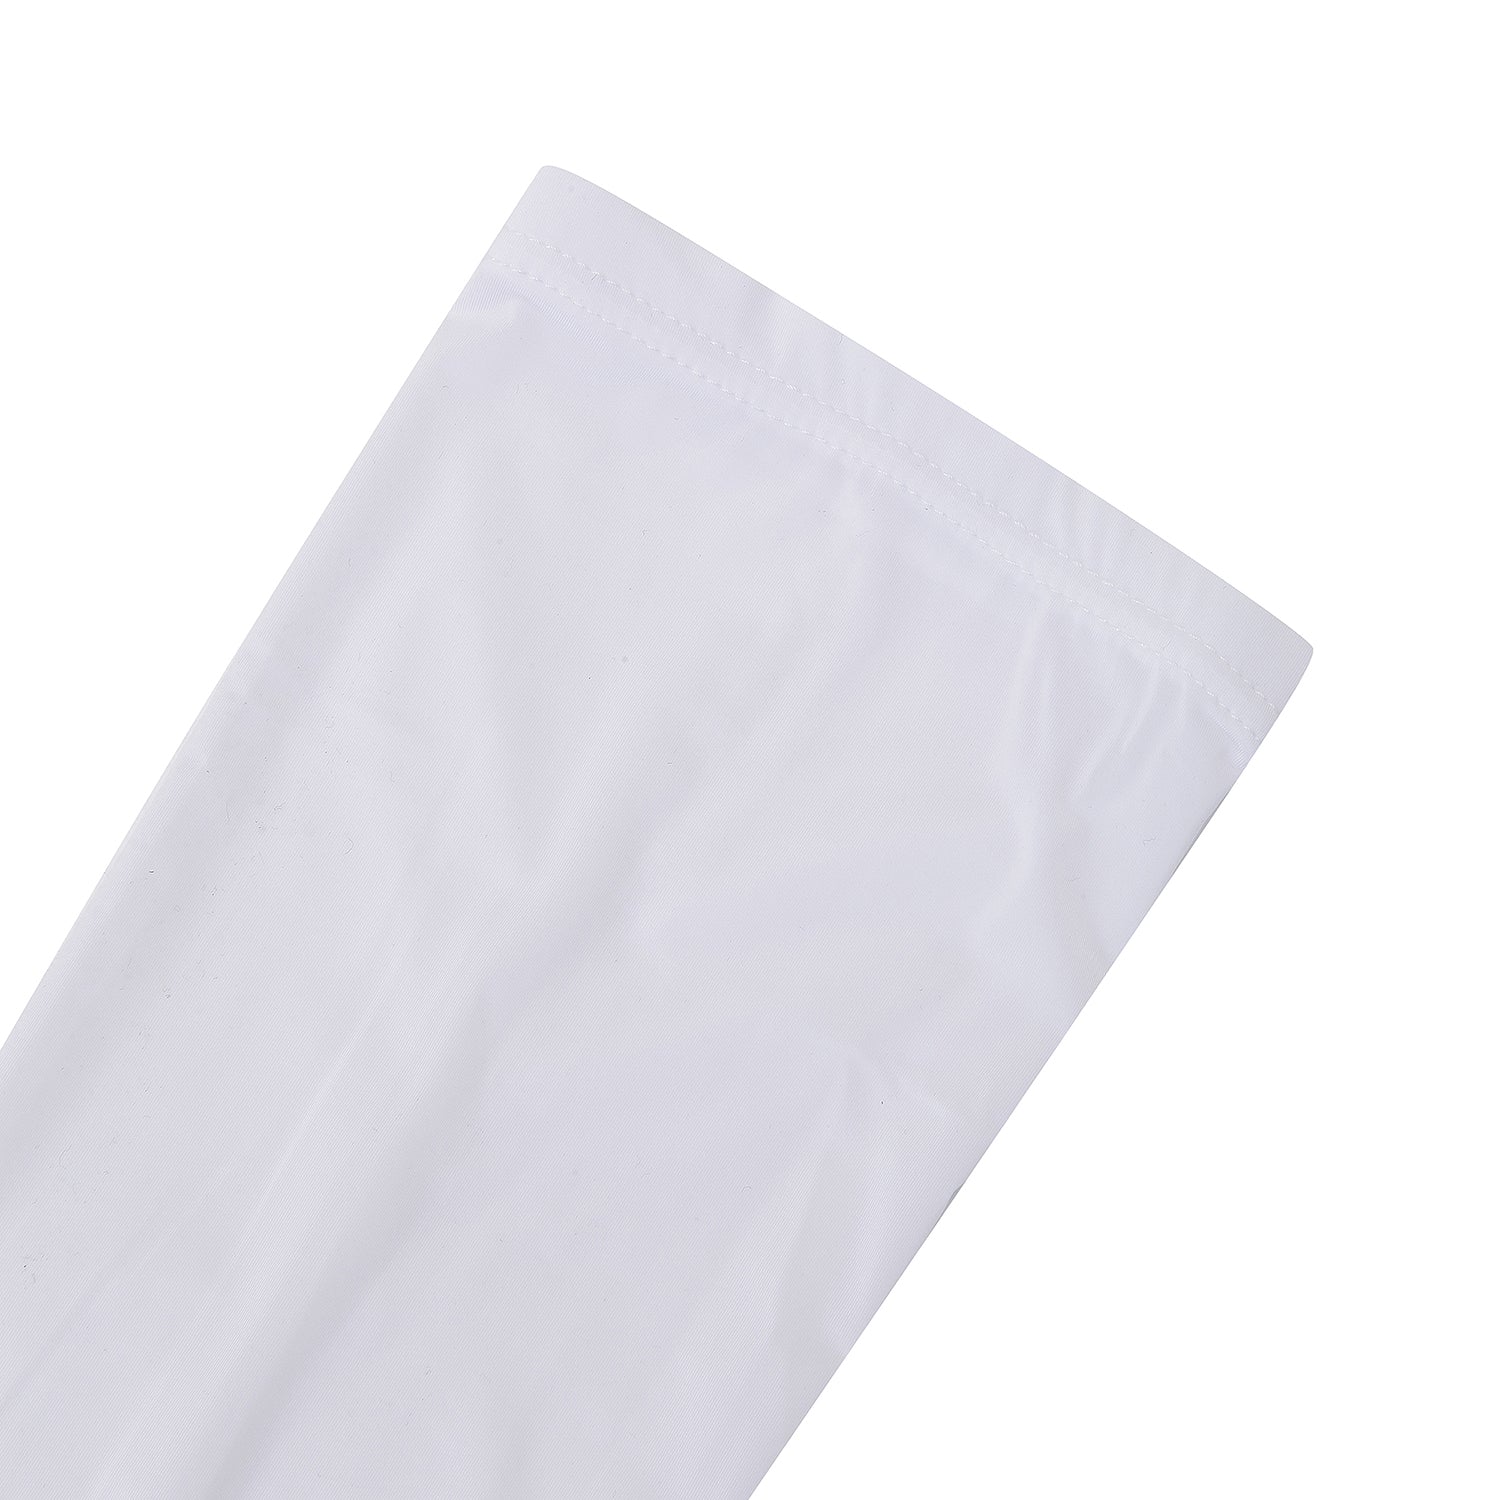 Men's New Logo Sleeves- White